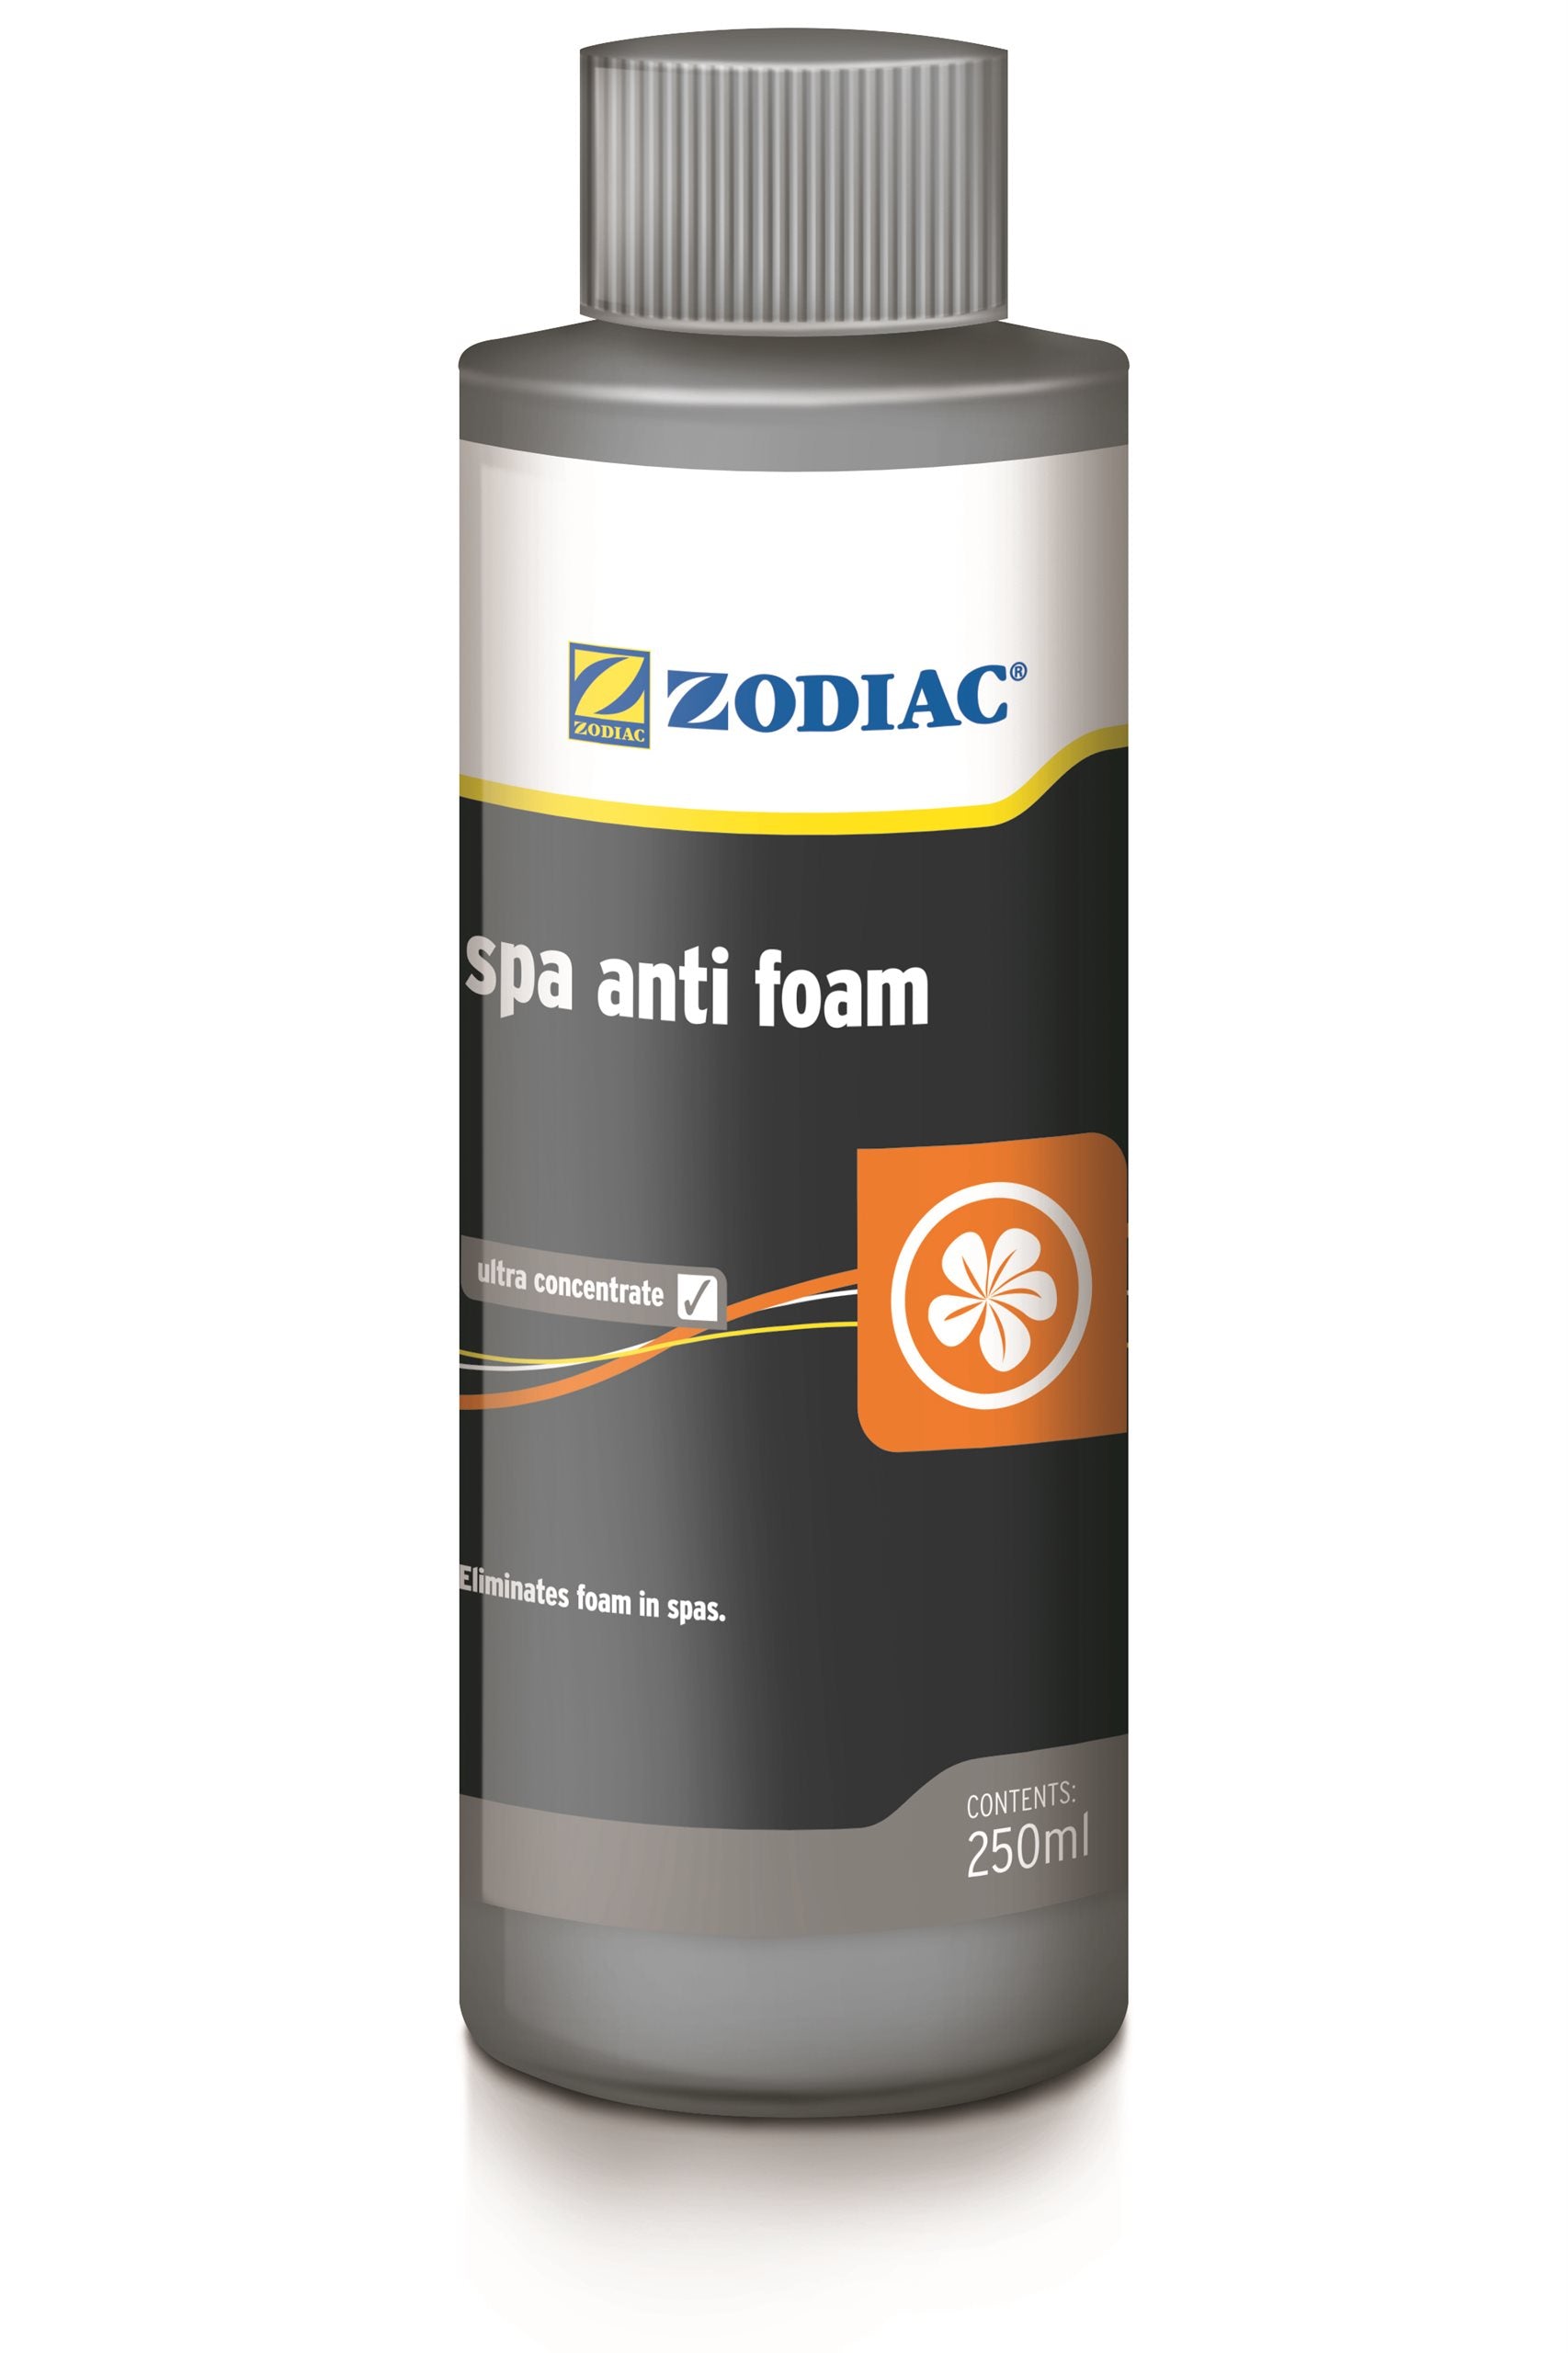 Zodiac Spa Anti Foam 250mL